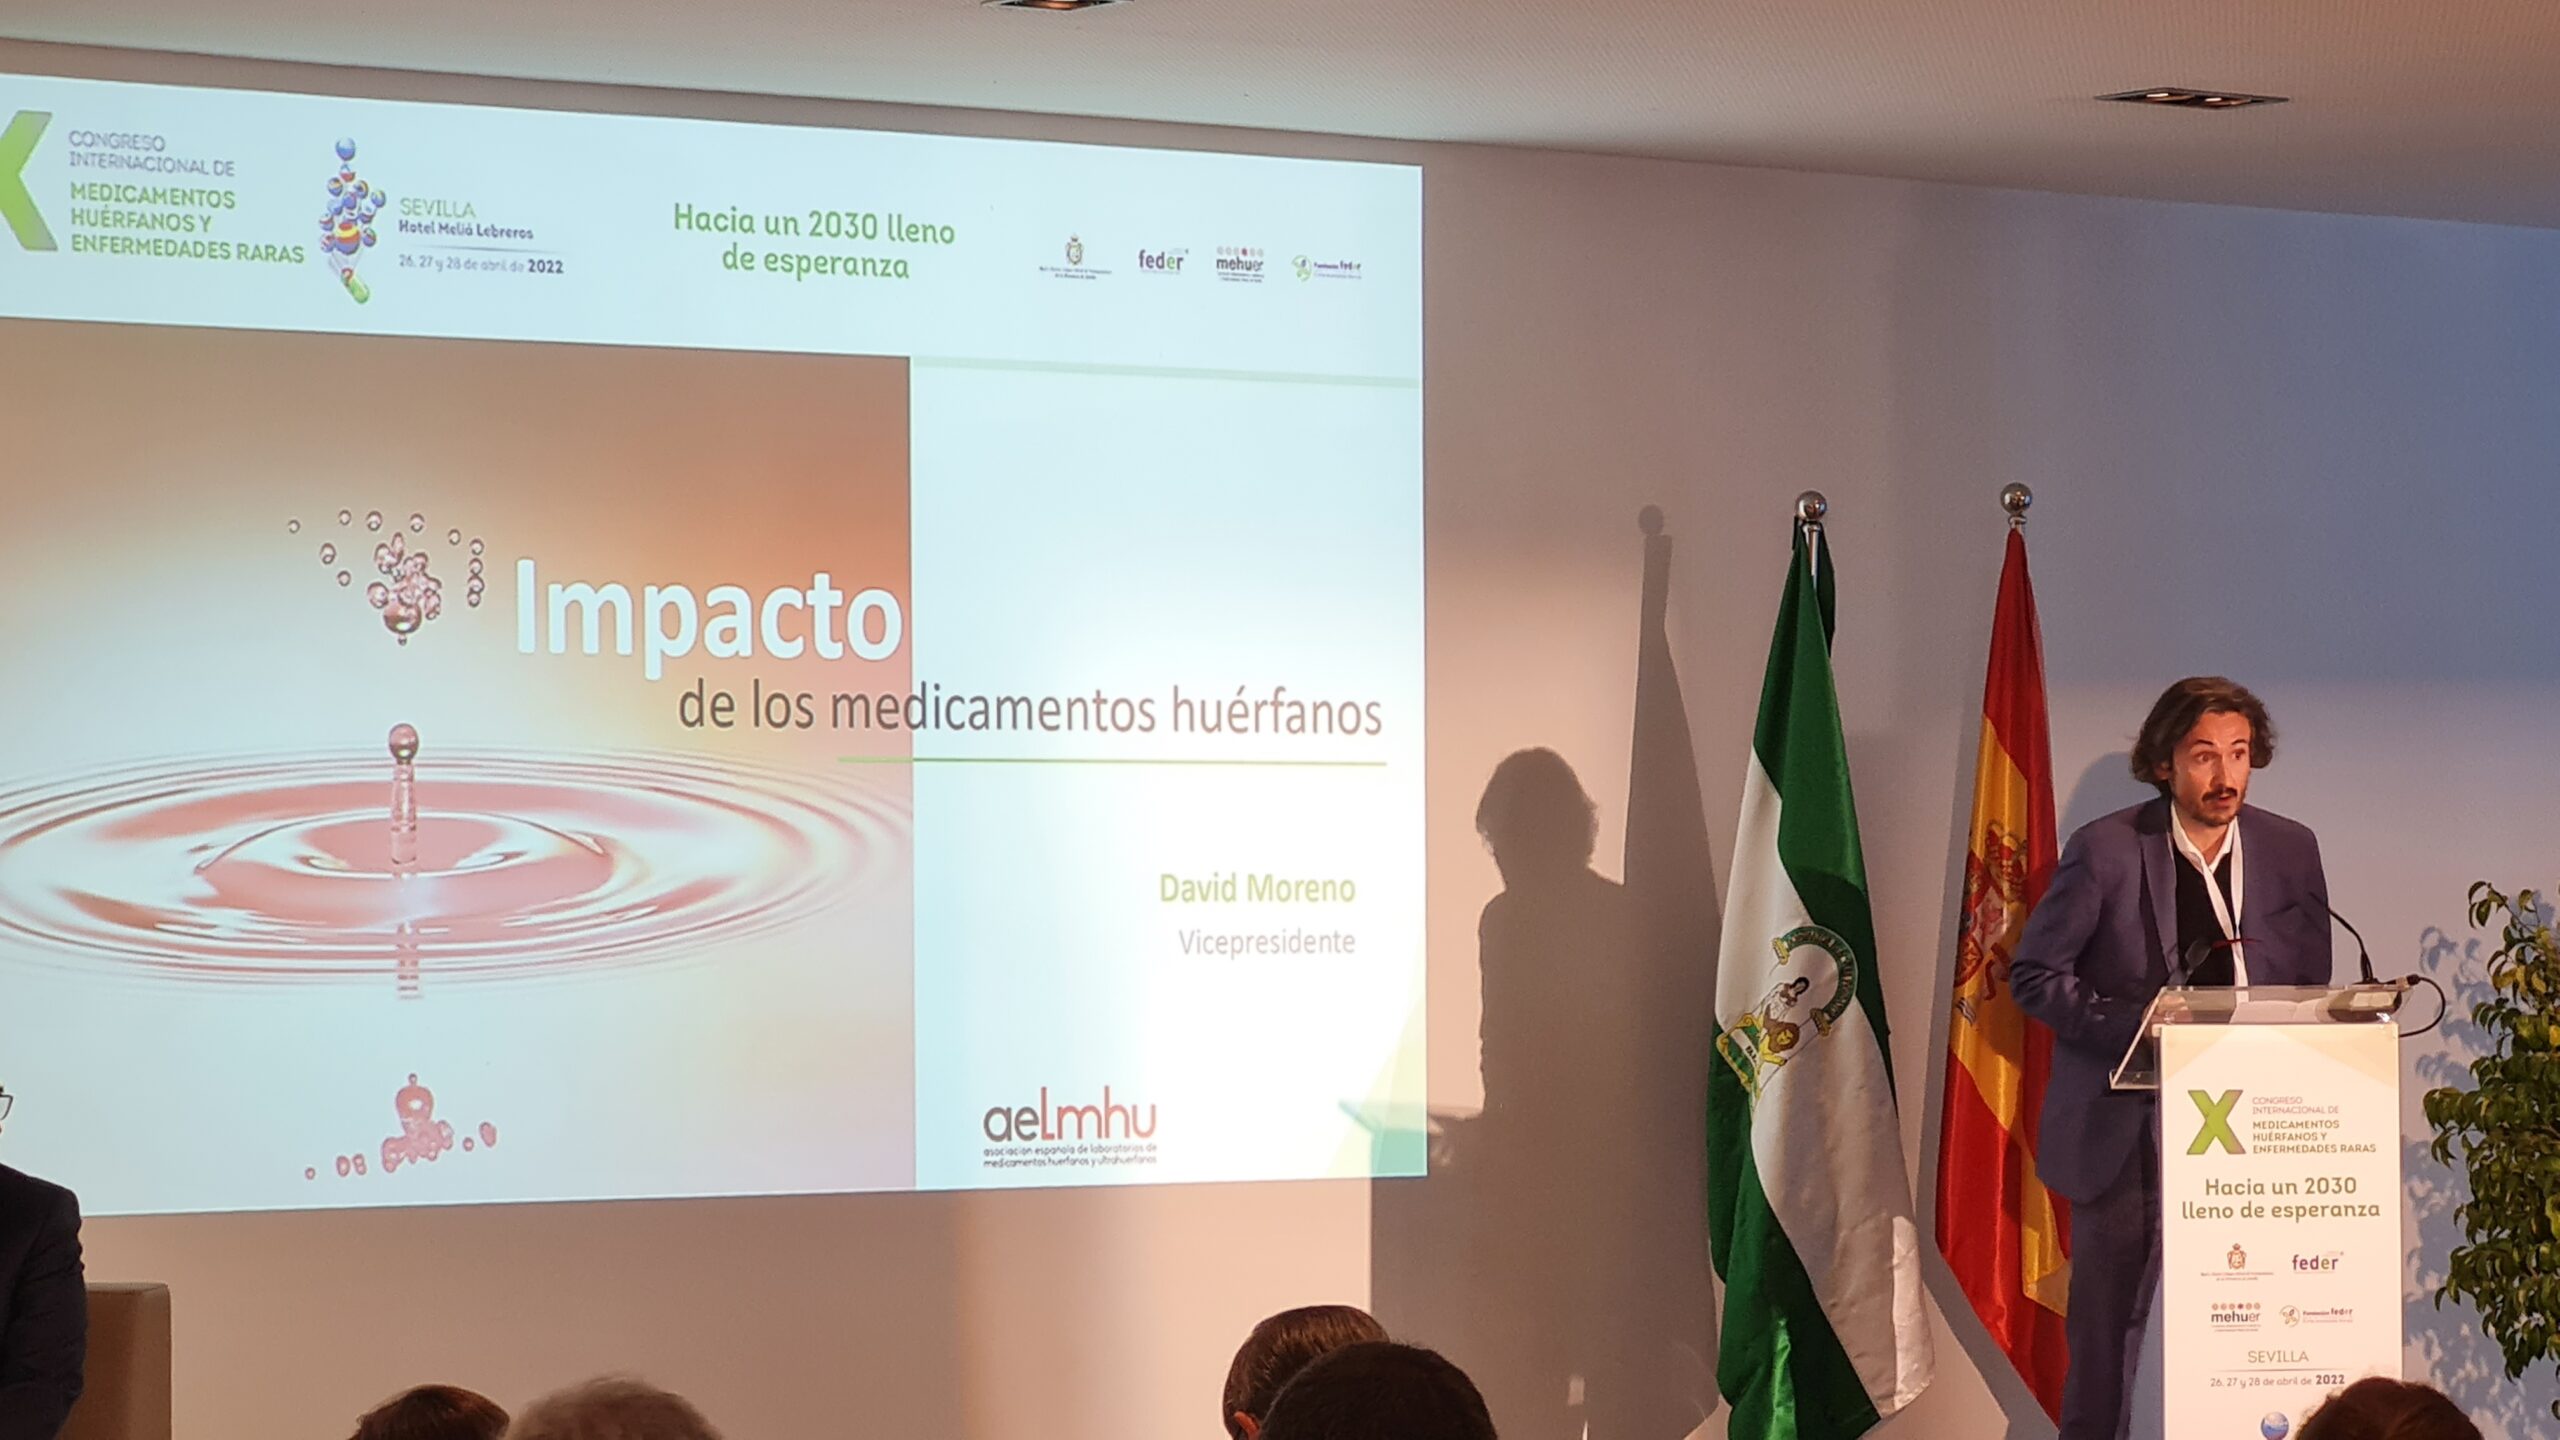 David Moreno, vicepresidente de AELMHU, participa en el X Congreso Internacional de Medicamentos Huérfanos y Enfermedades Raras en Sevilla